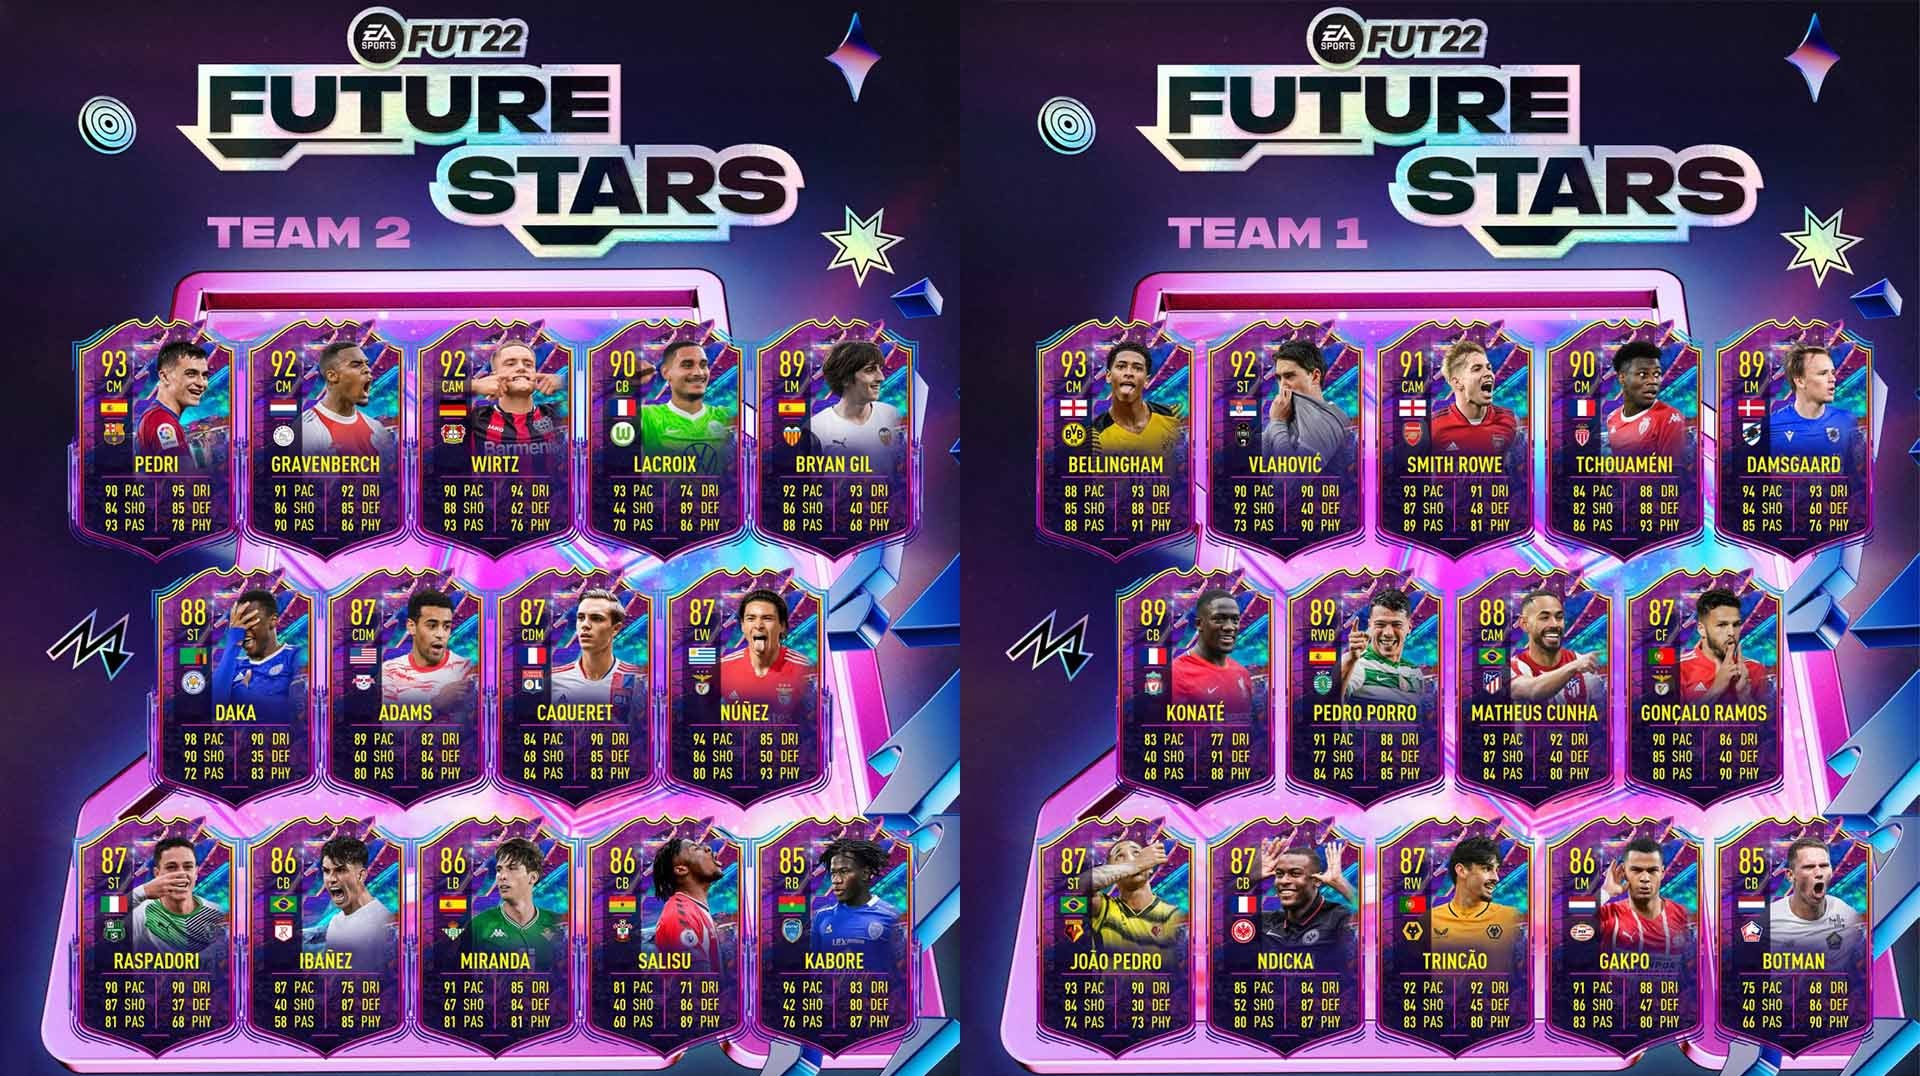 Bilder zu FIFA 22 Future Stars Team 2 ist da! - Alle Spieler und ihre Upgrades